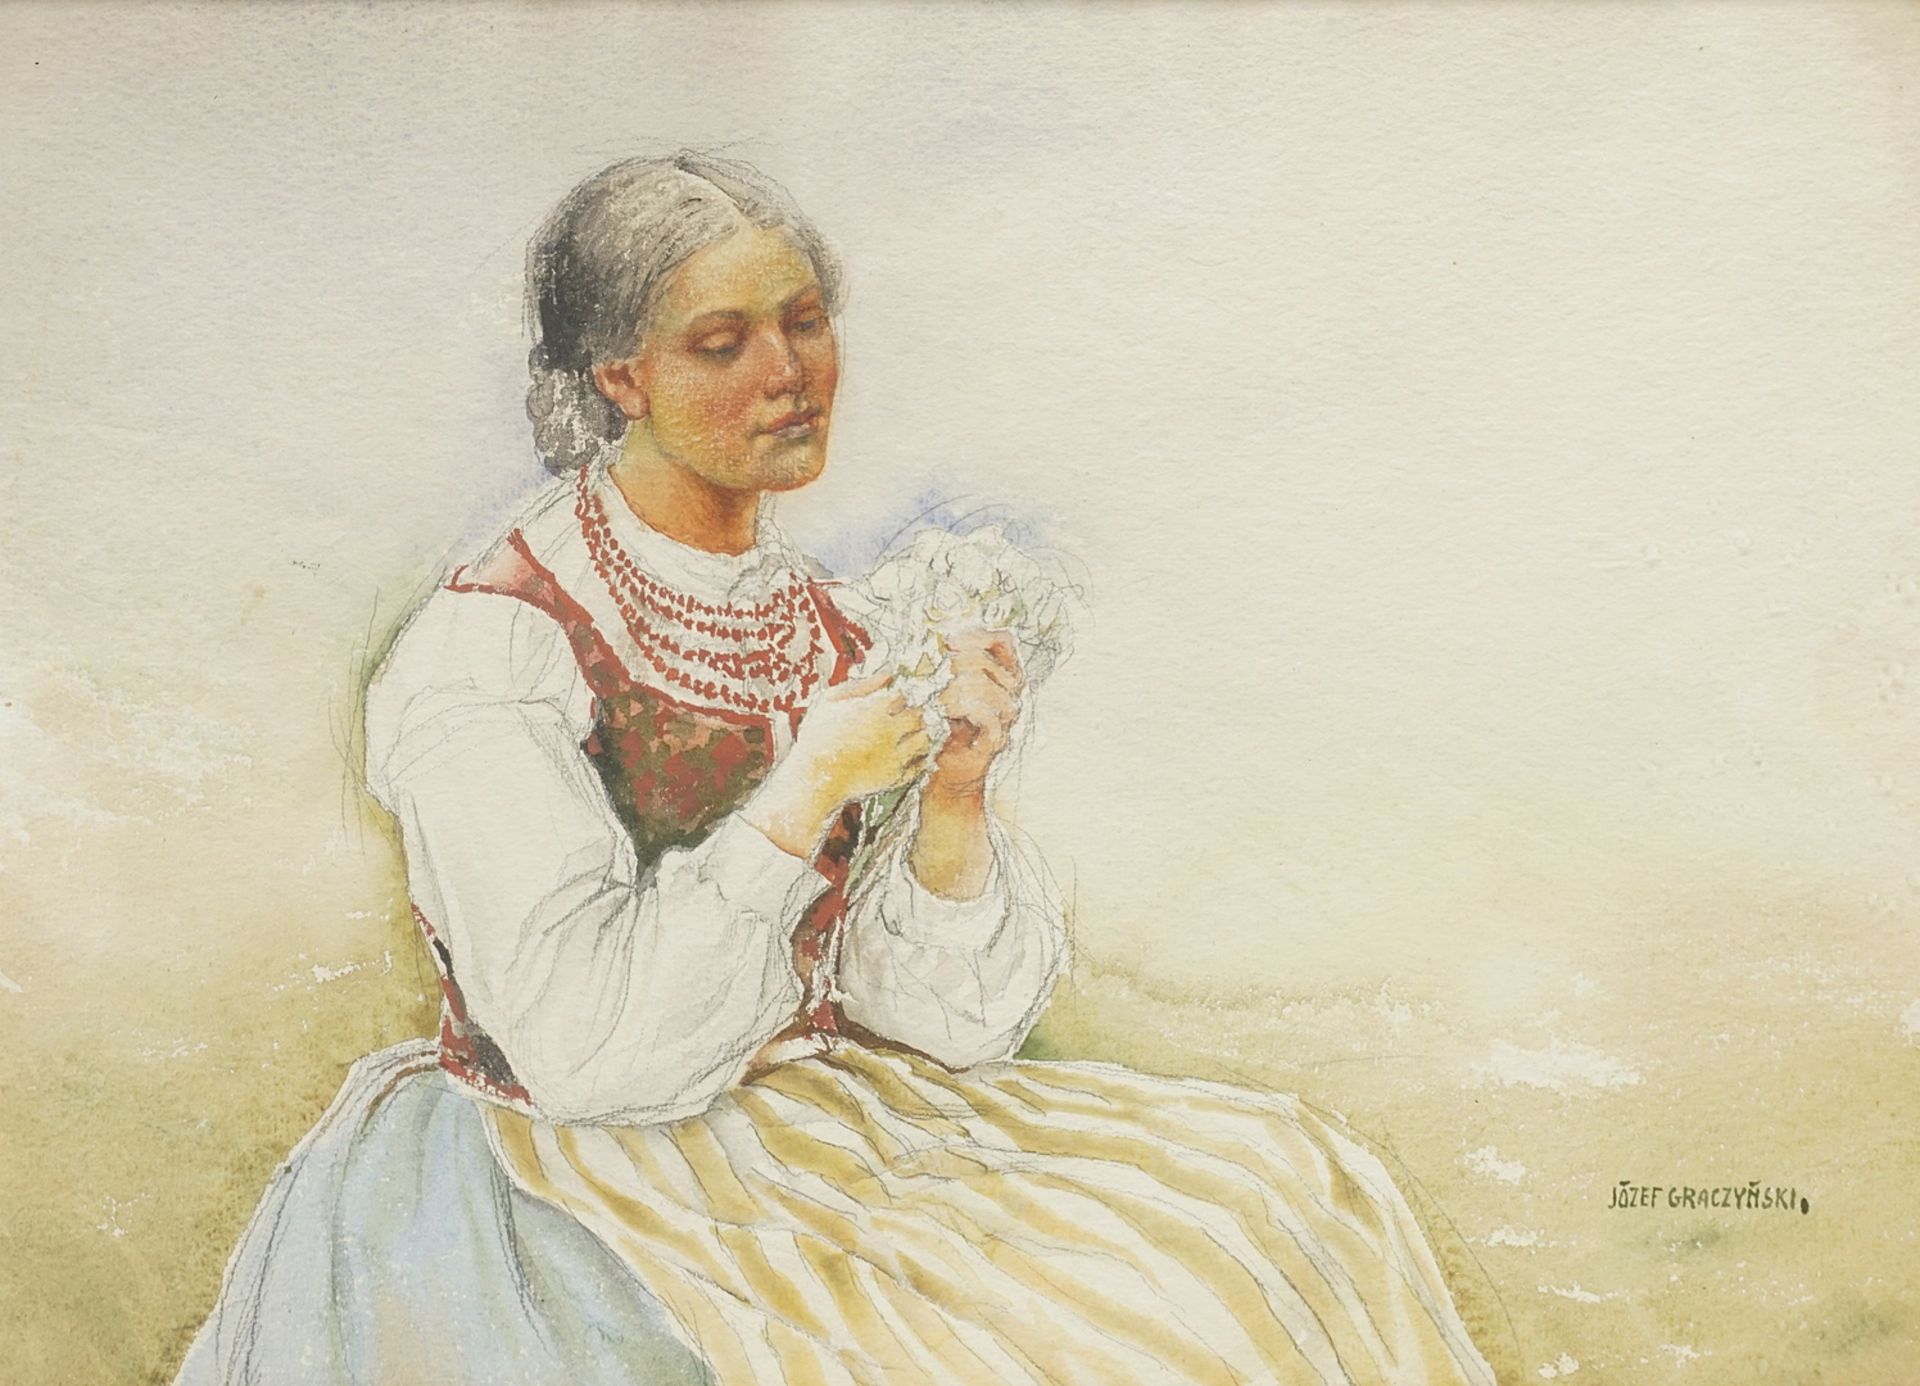 Józef Graczynski (1866-1939), Peasant woman in traditional costume